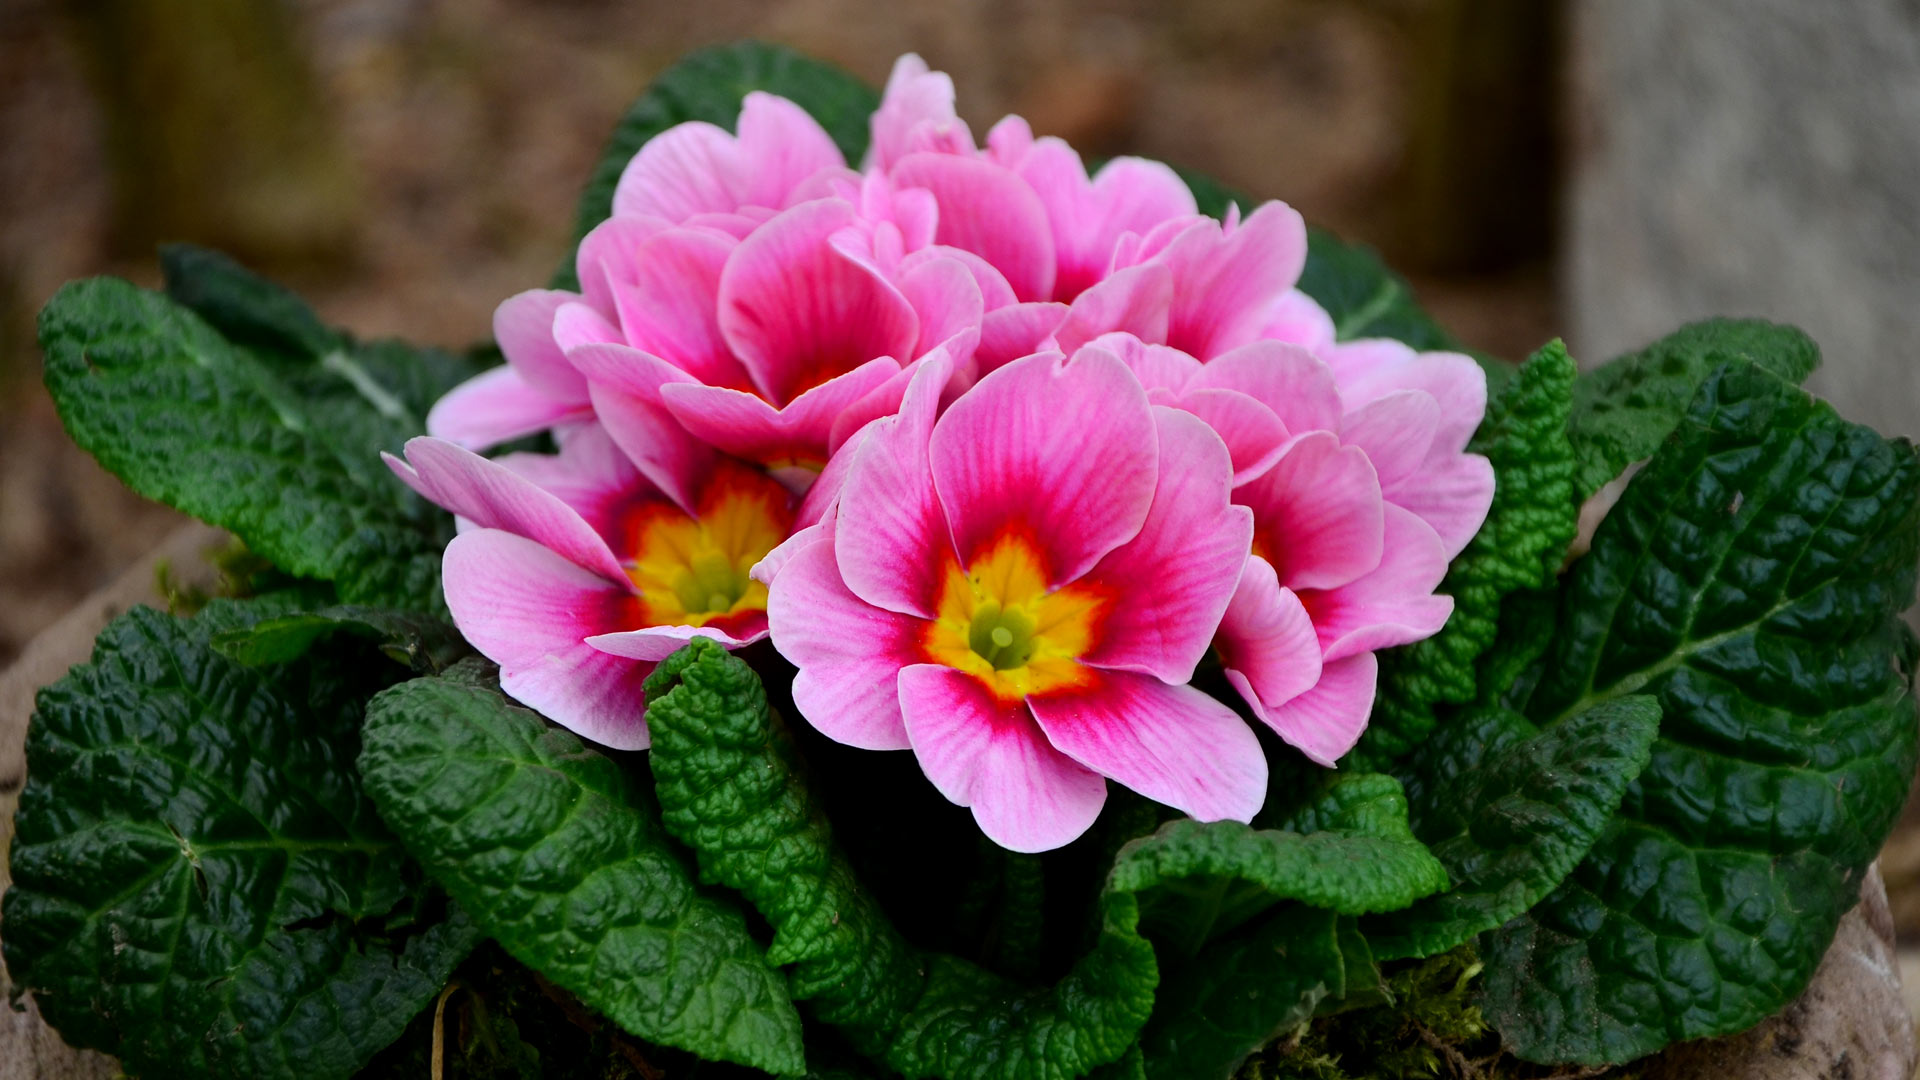 pink-spring-flowers-wallpapers-hd-1080p-1920x1080-desktop-03.jpg